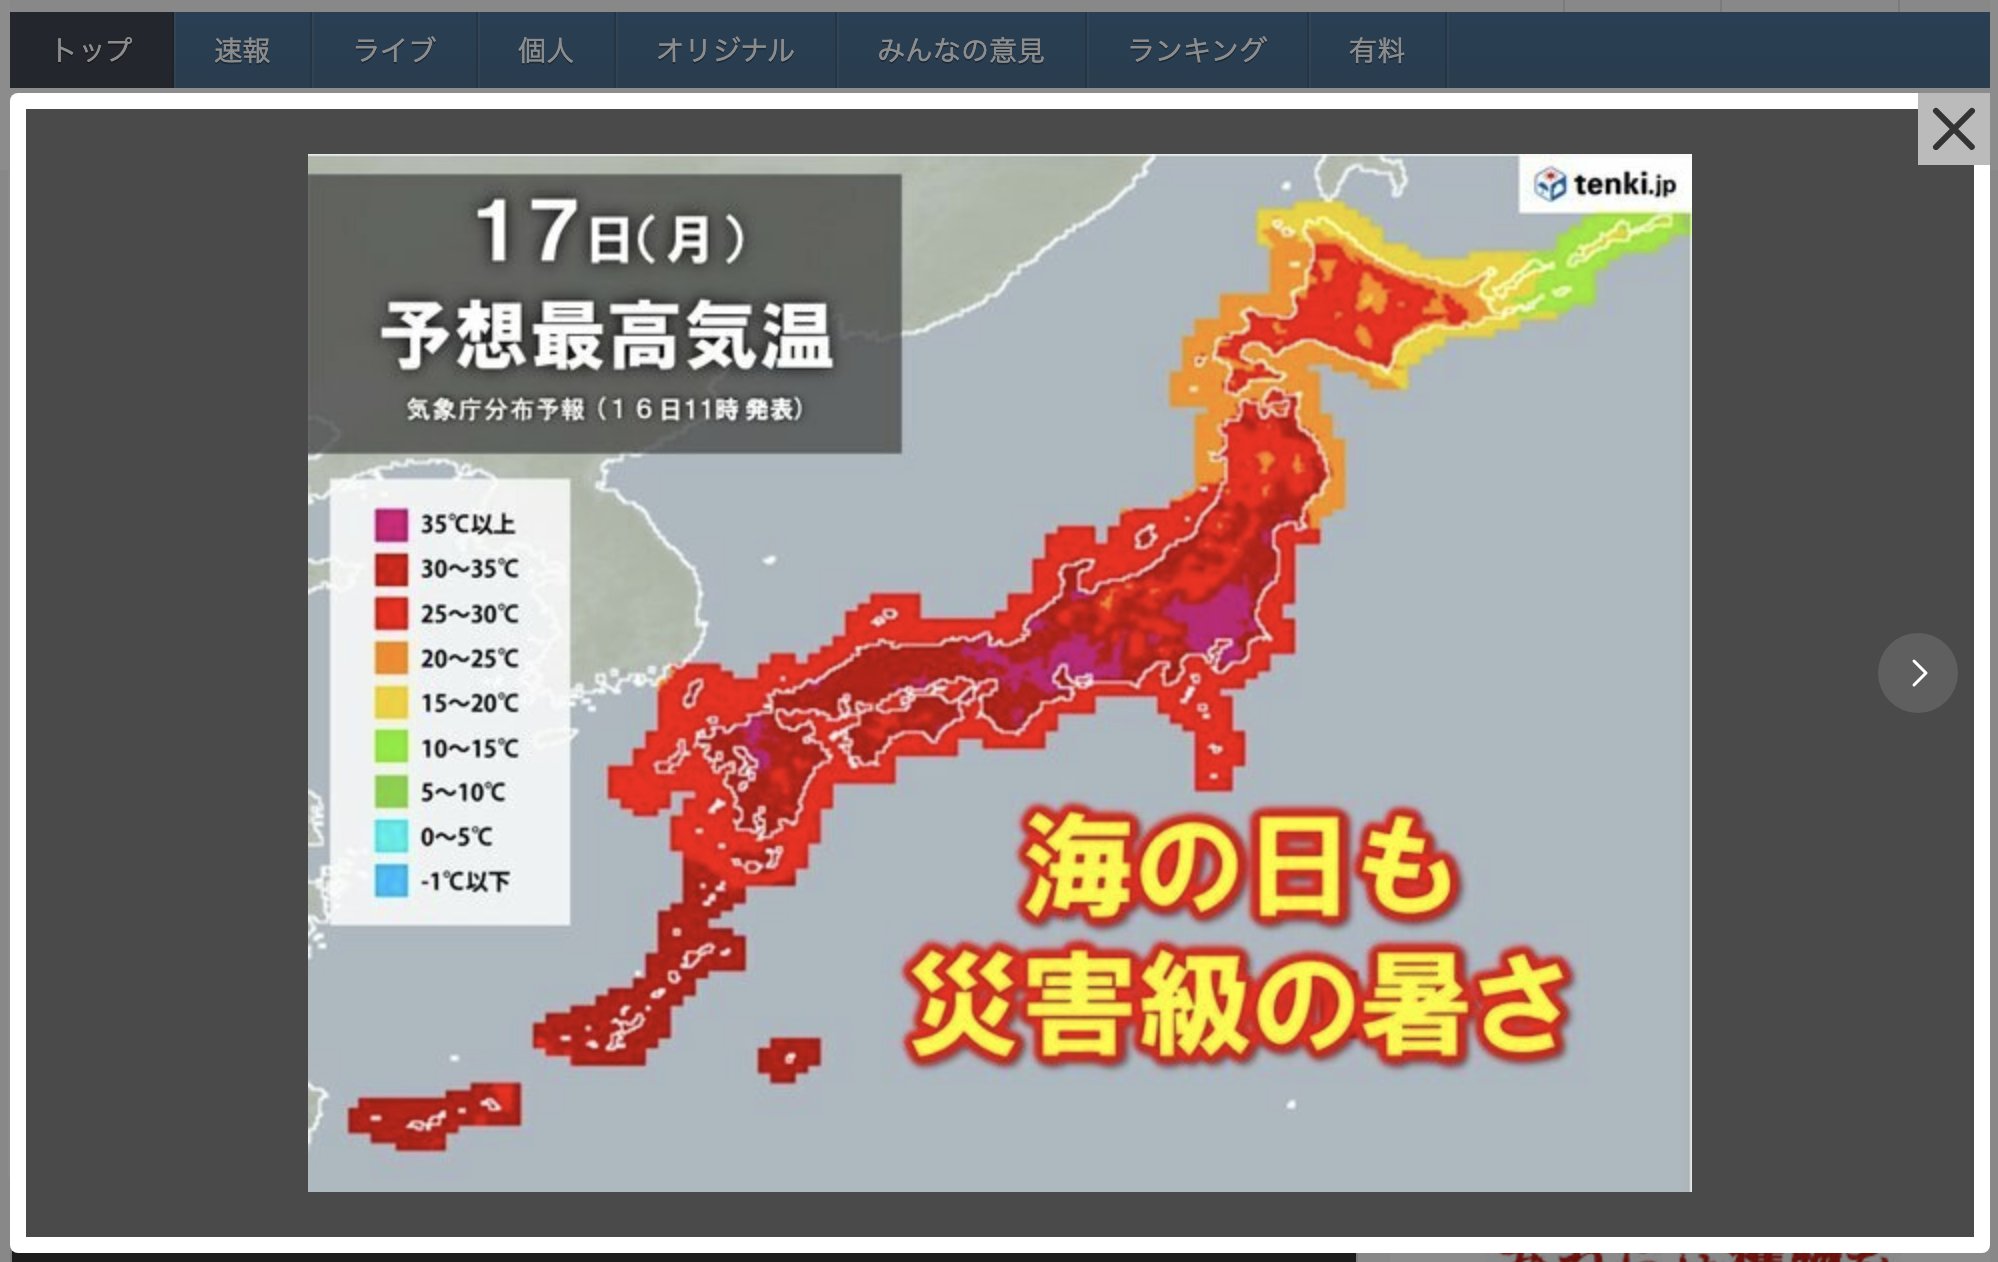 Καύσωνας: Προειδοποίηση για τον κίνδυνο θερμοπληξίας εξέδωσε η Ιαπωνία - Καταγράφονται θερμοκρασίες ρεκόρ